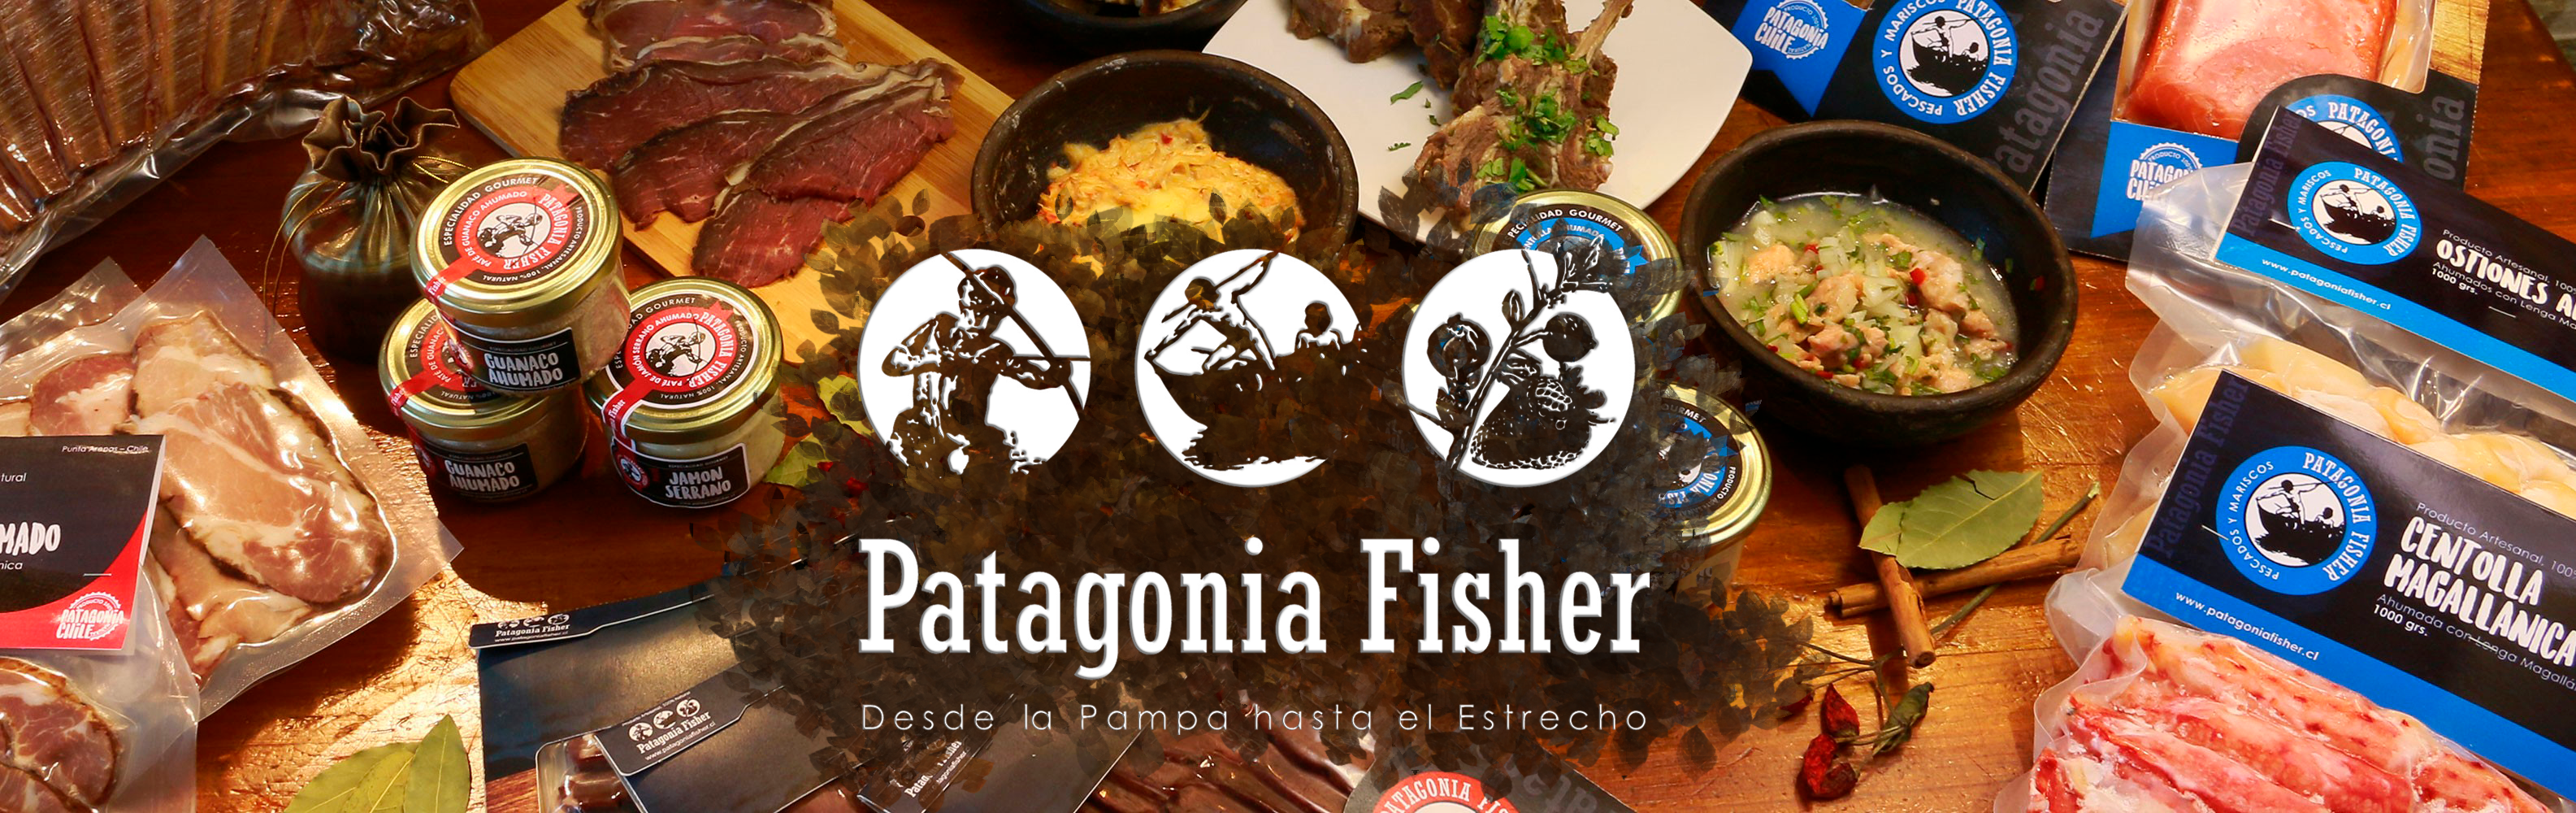 Patagonia Fisher Desde la Pampa hasta el Estrecho